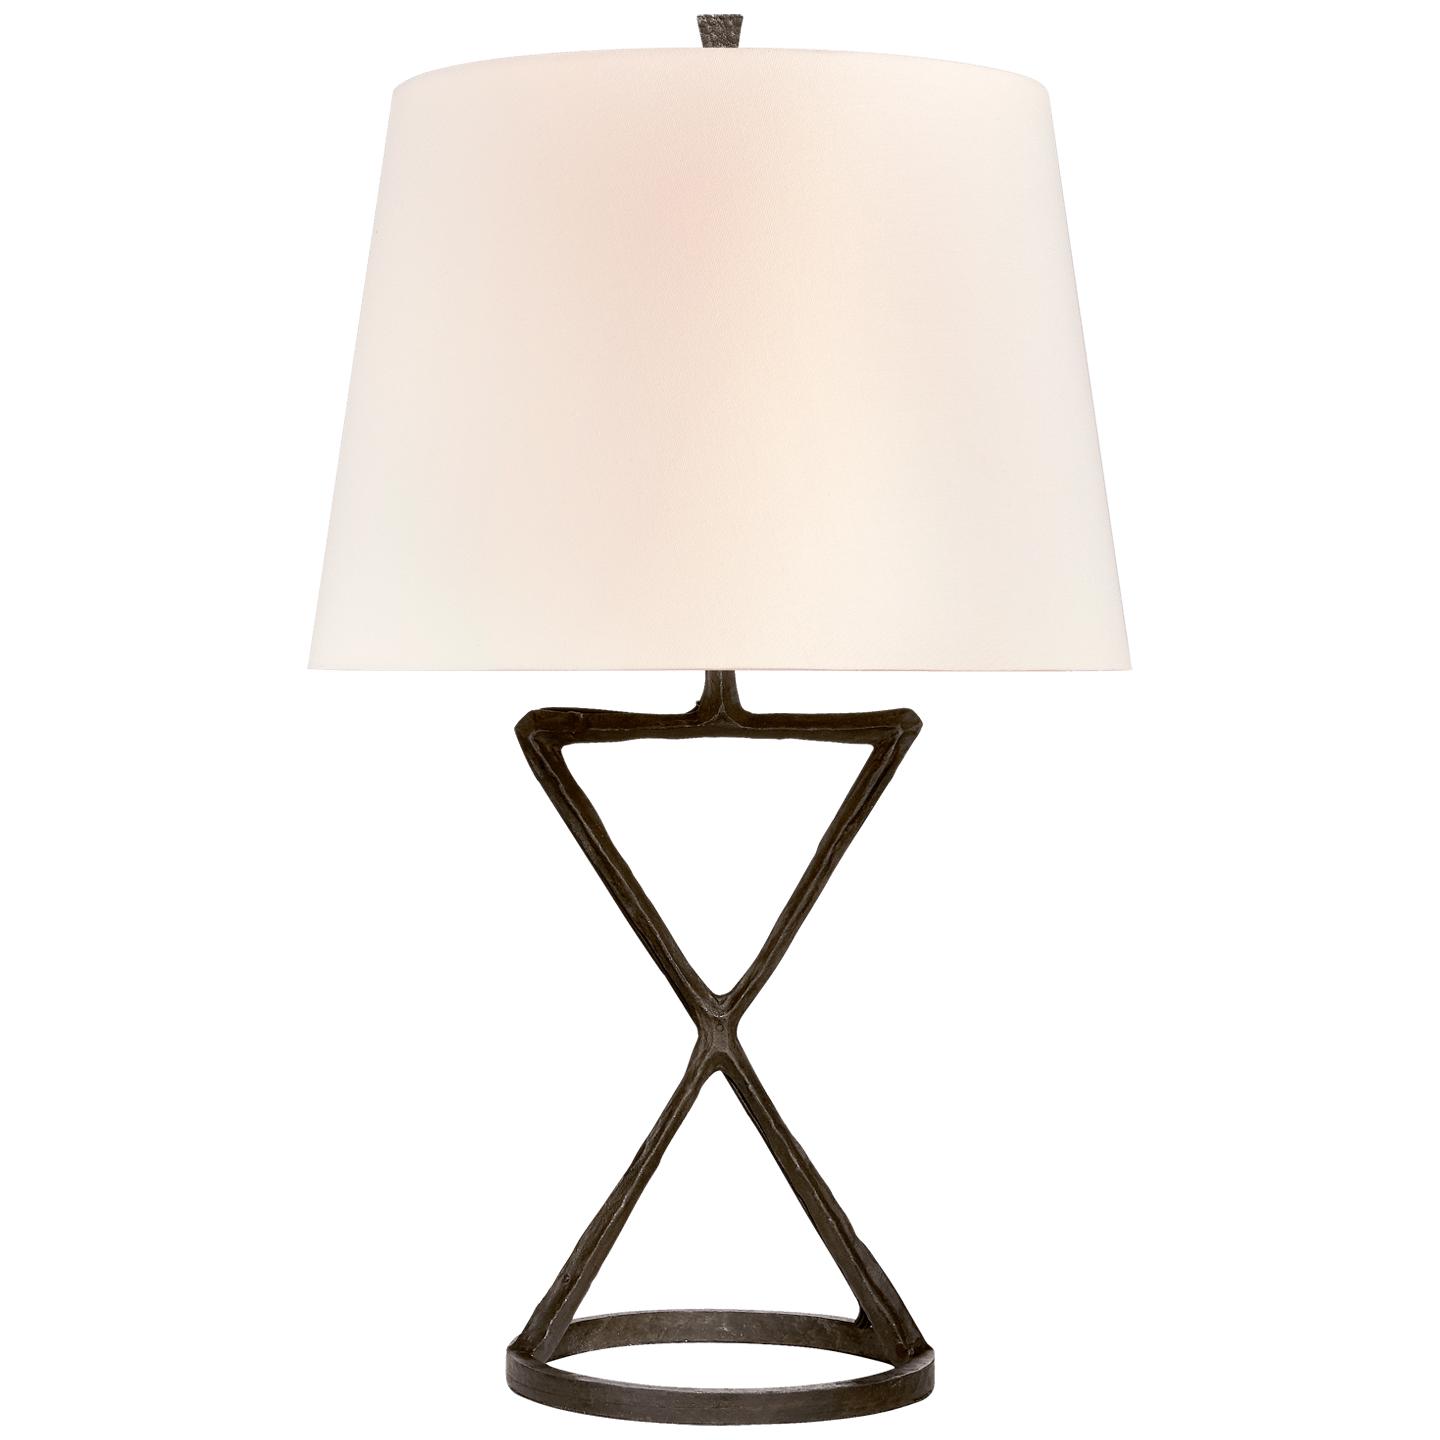 Купить Настольная лампа Anneu Table Lamp в интернет-магазине roooms.ru